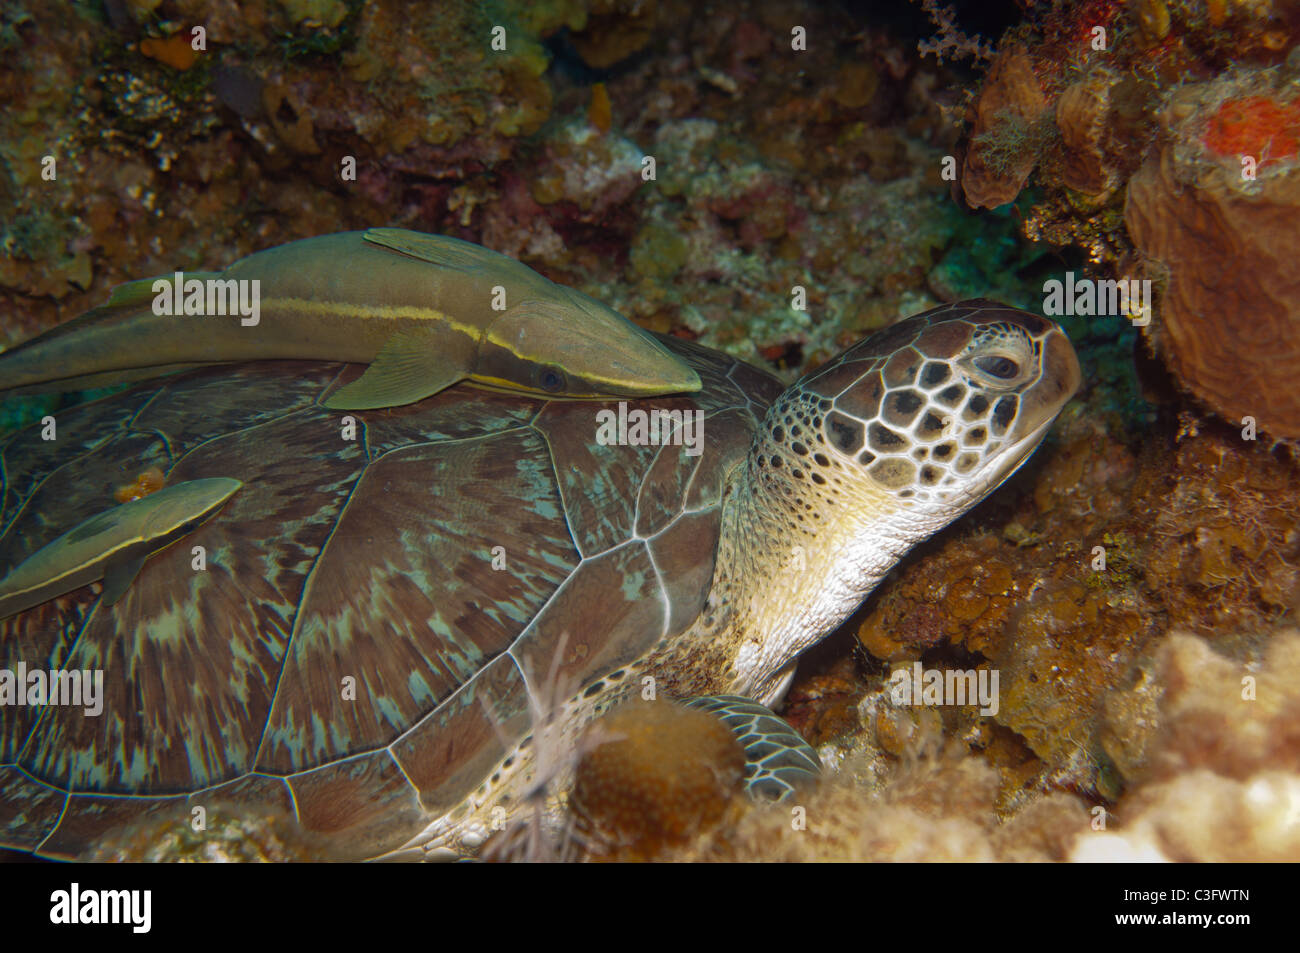 White suckerfish possono spesso essere trovati autostop sul retro dei grandi organismi marini come questa tartaruga verde. Foto Stock